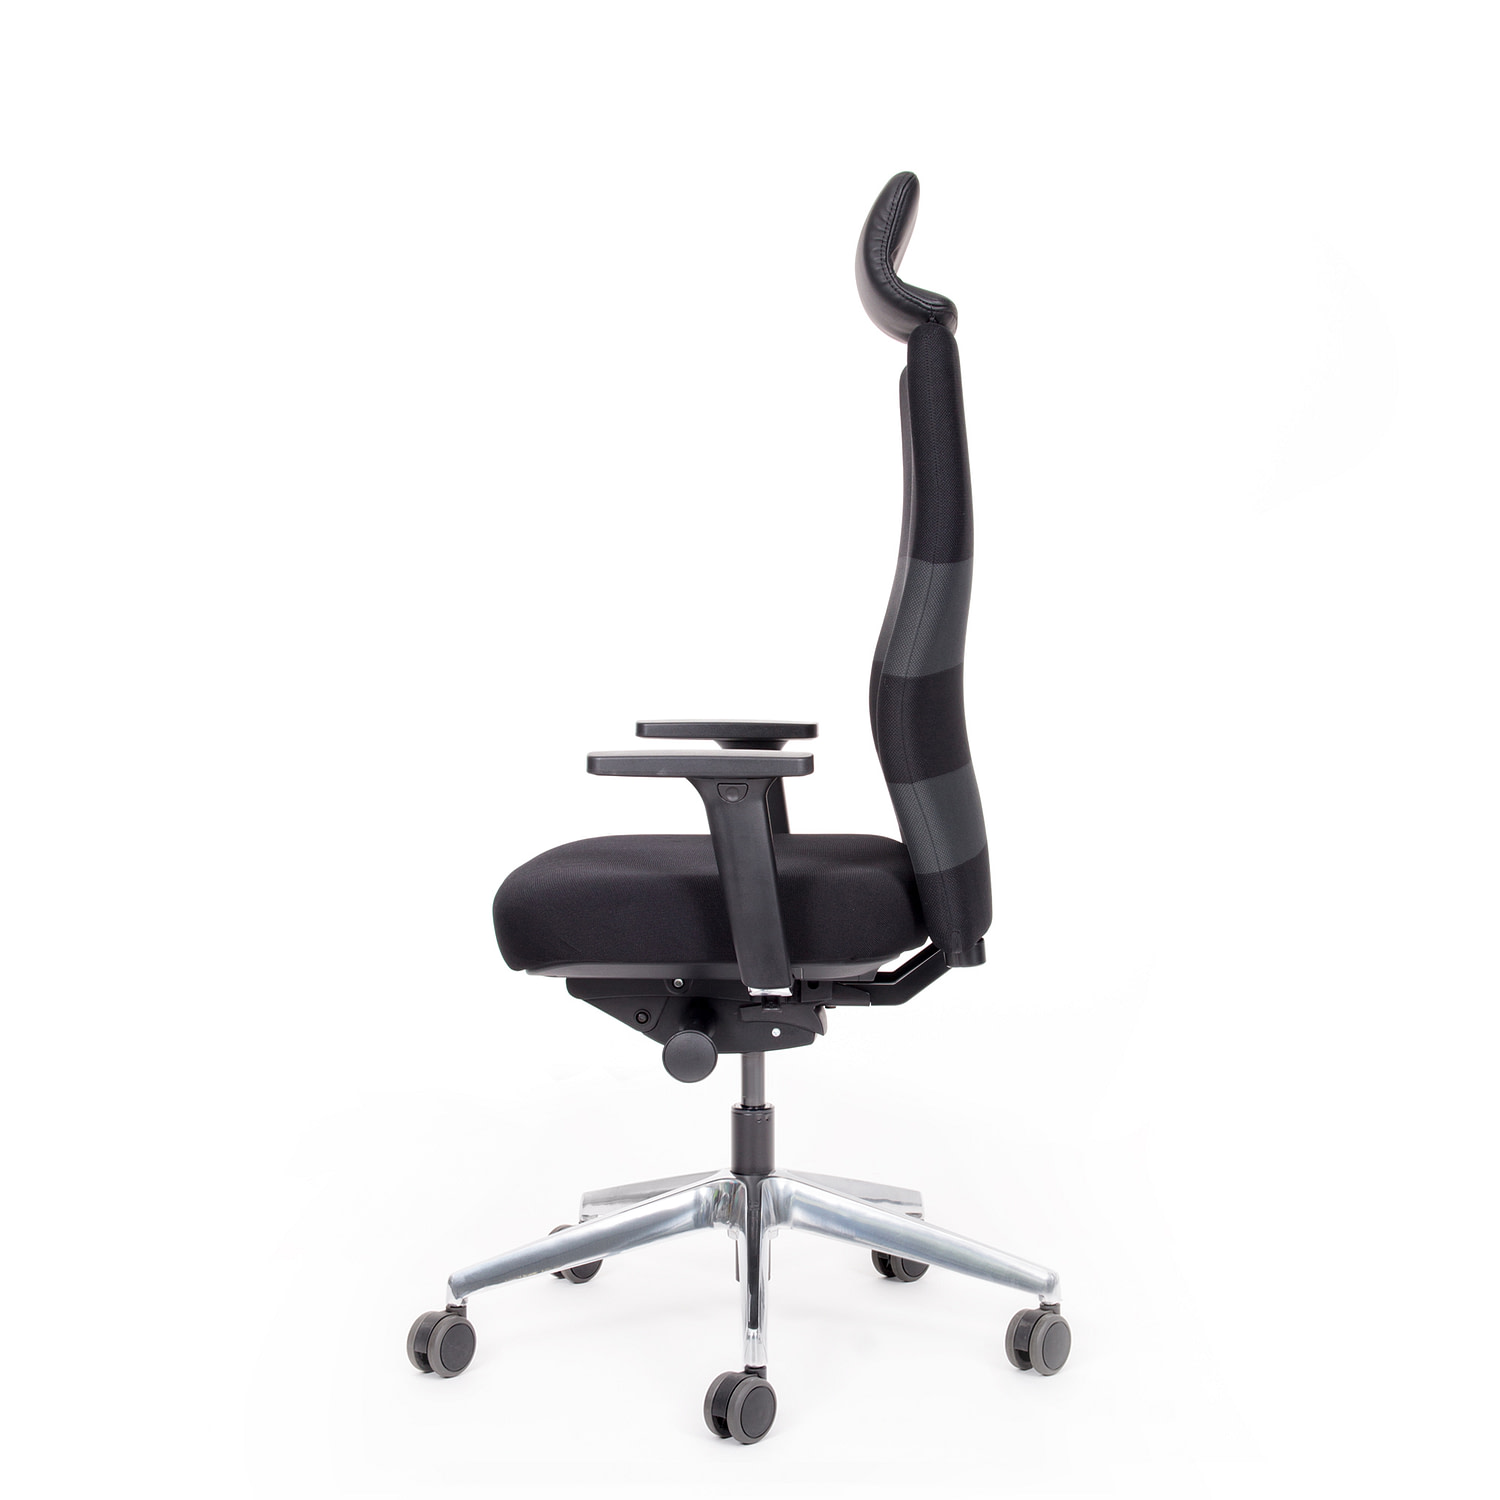 Abbildung: Bürostuhl mit gepolsterter Kopf- / Nacken-stütze, inkl. Synchronmechanik mit automatischer Sitz-neigeverstellung, 4-fach verstellbaren Armlehnen, 10 Jahre Garantie, mehrfarbig, Alufußkreuz